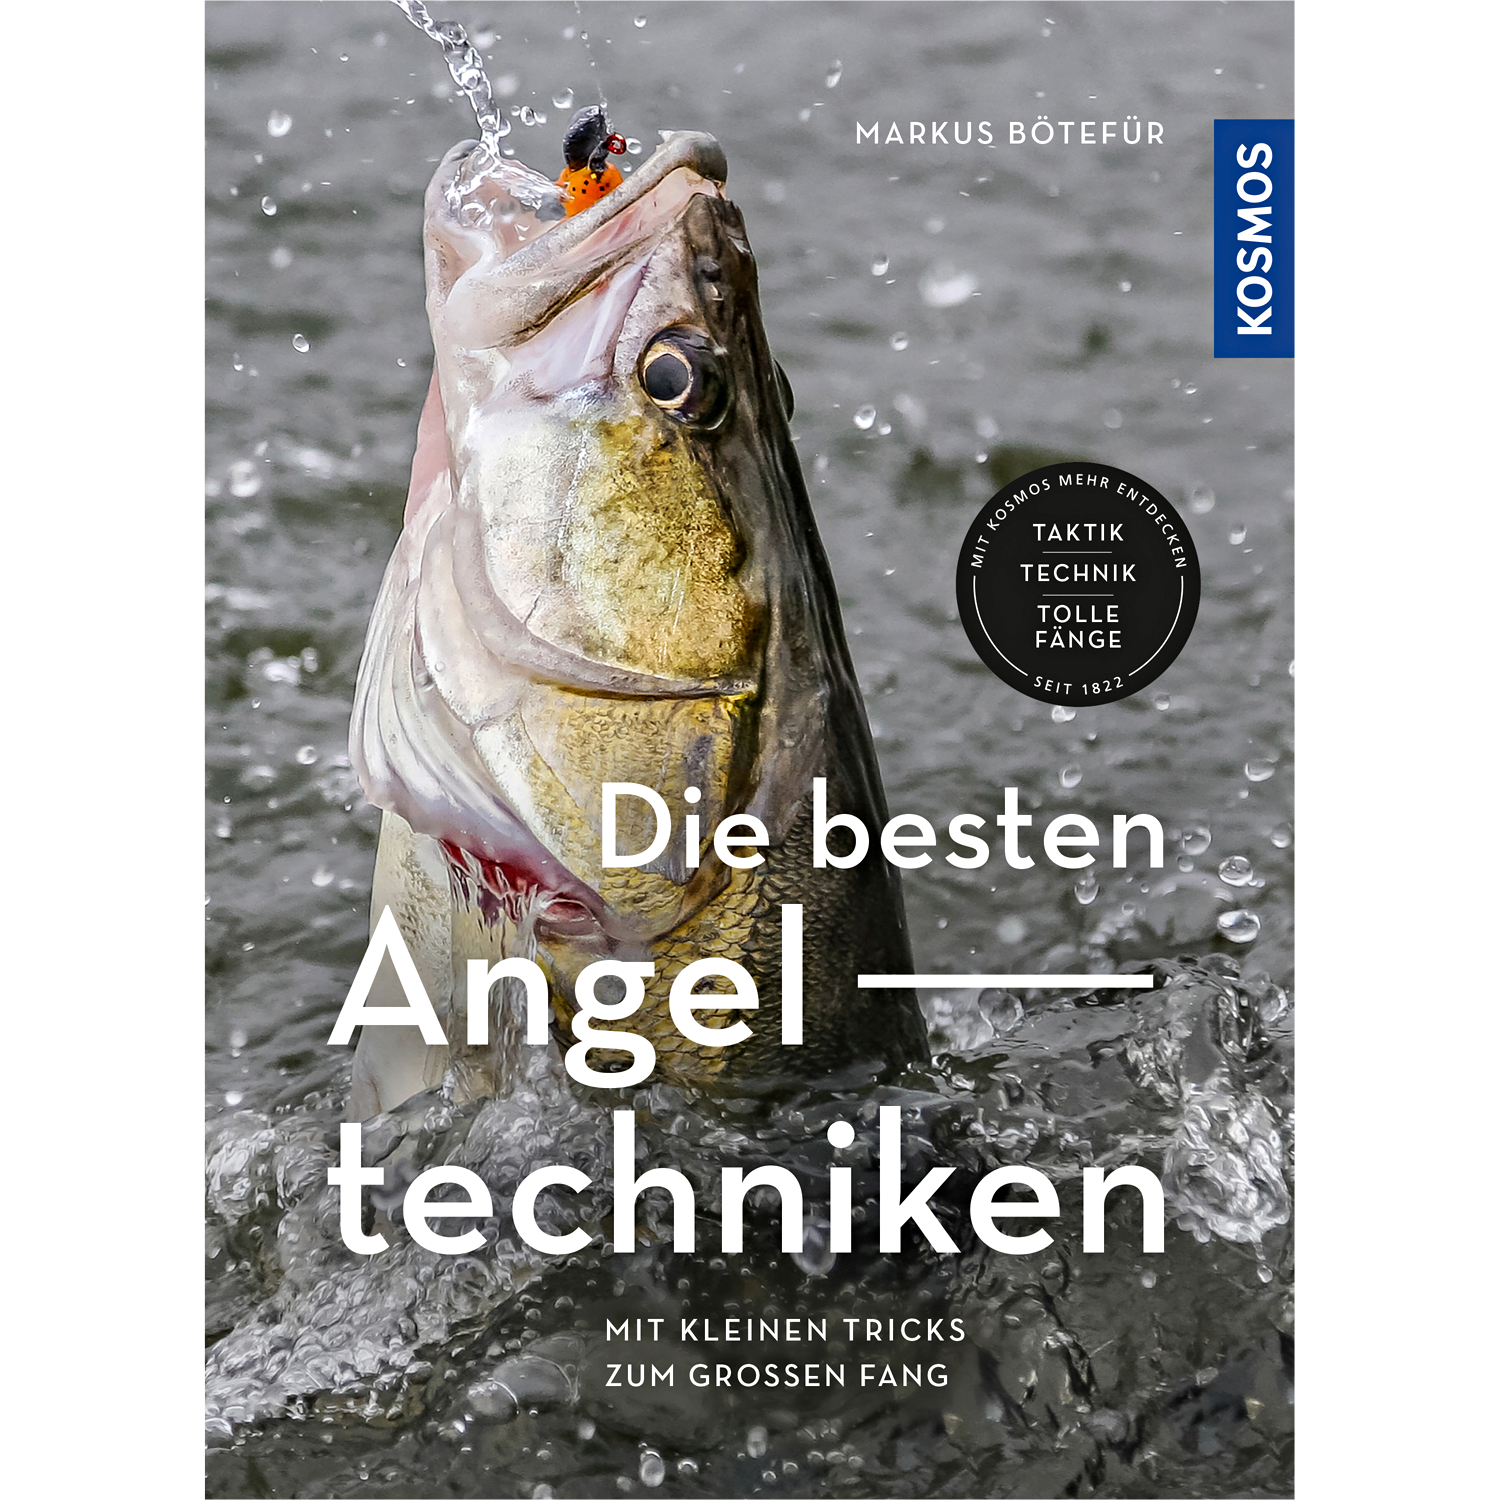 Book: Die besten Angeltechniken - Mit kleinen Tricks zum grossen Fang 